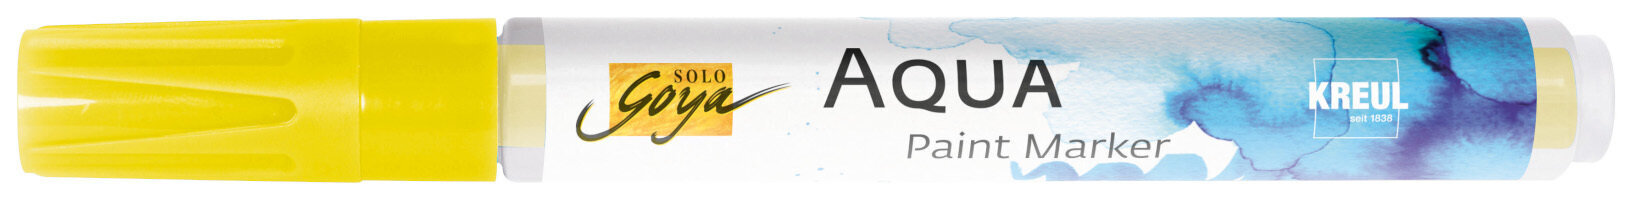 Merkintäkynä Kreul Aqua Aqua Paint Marker Citron 1 kpl